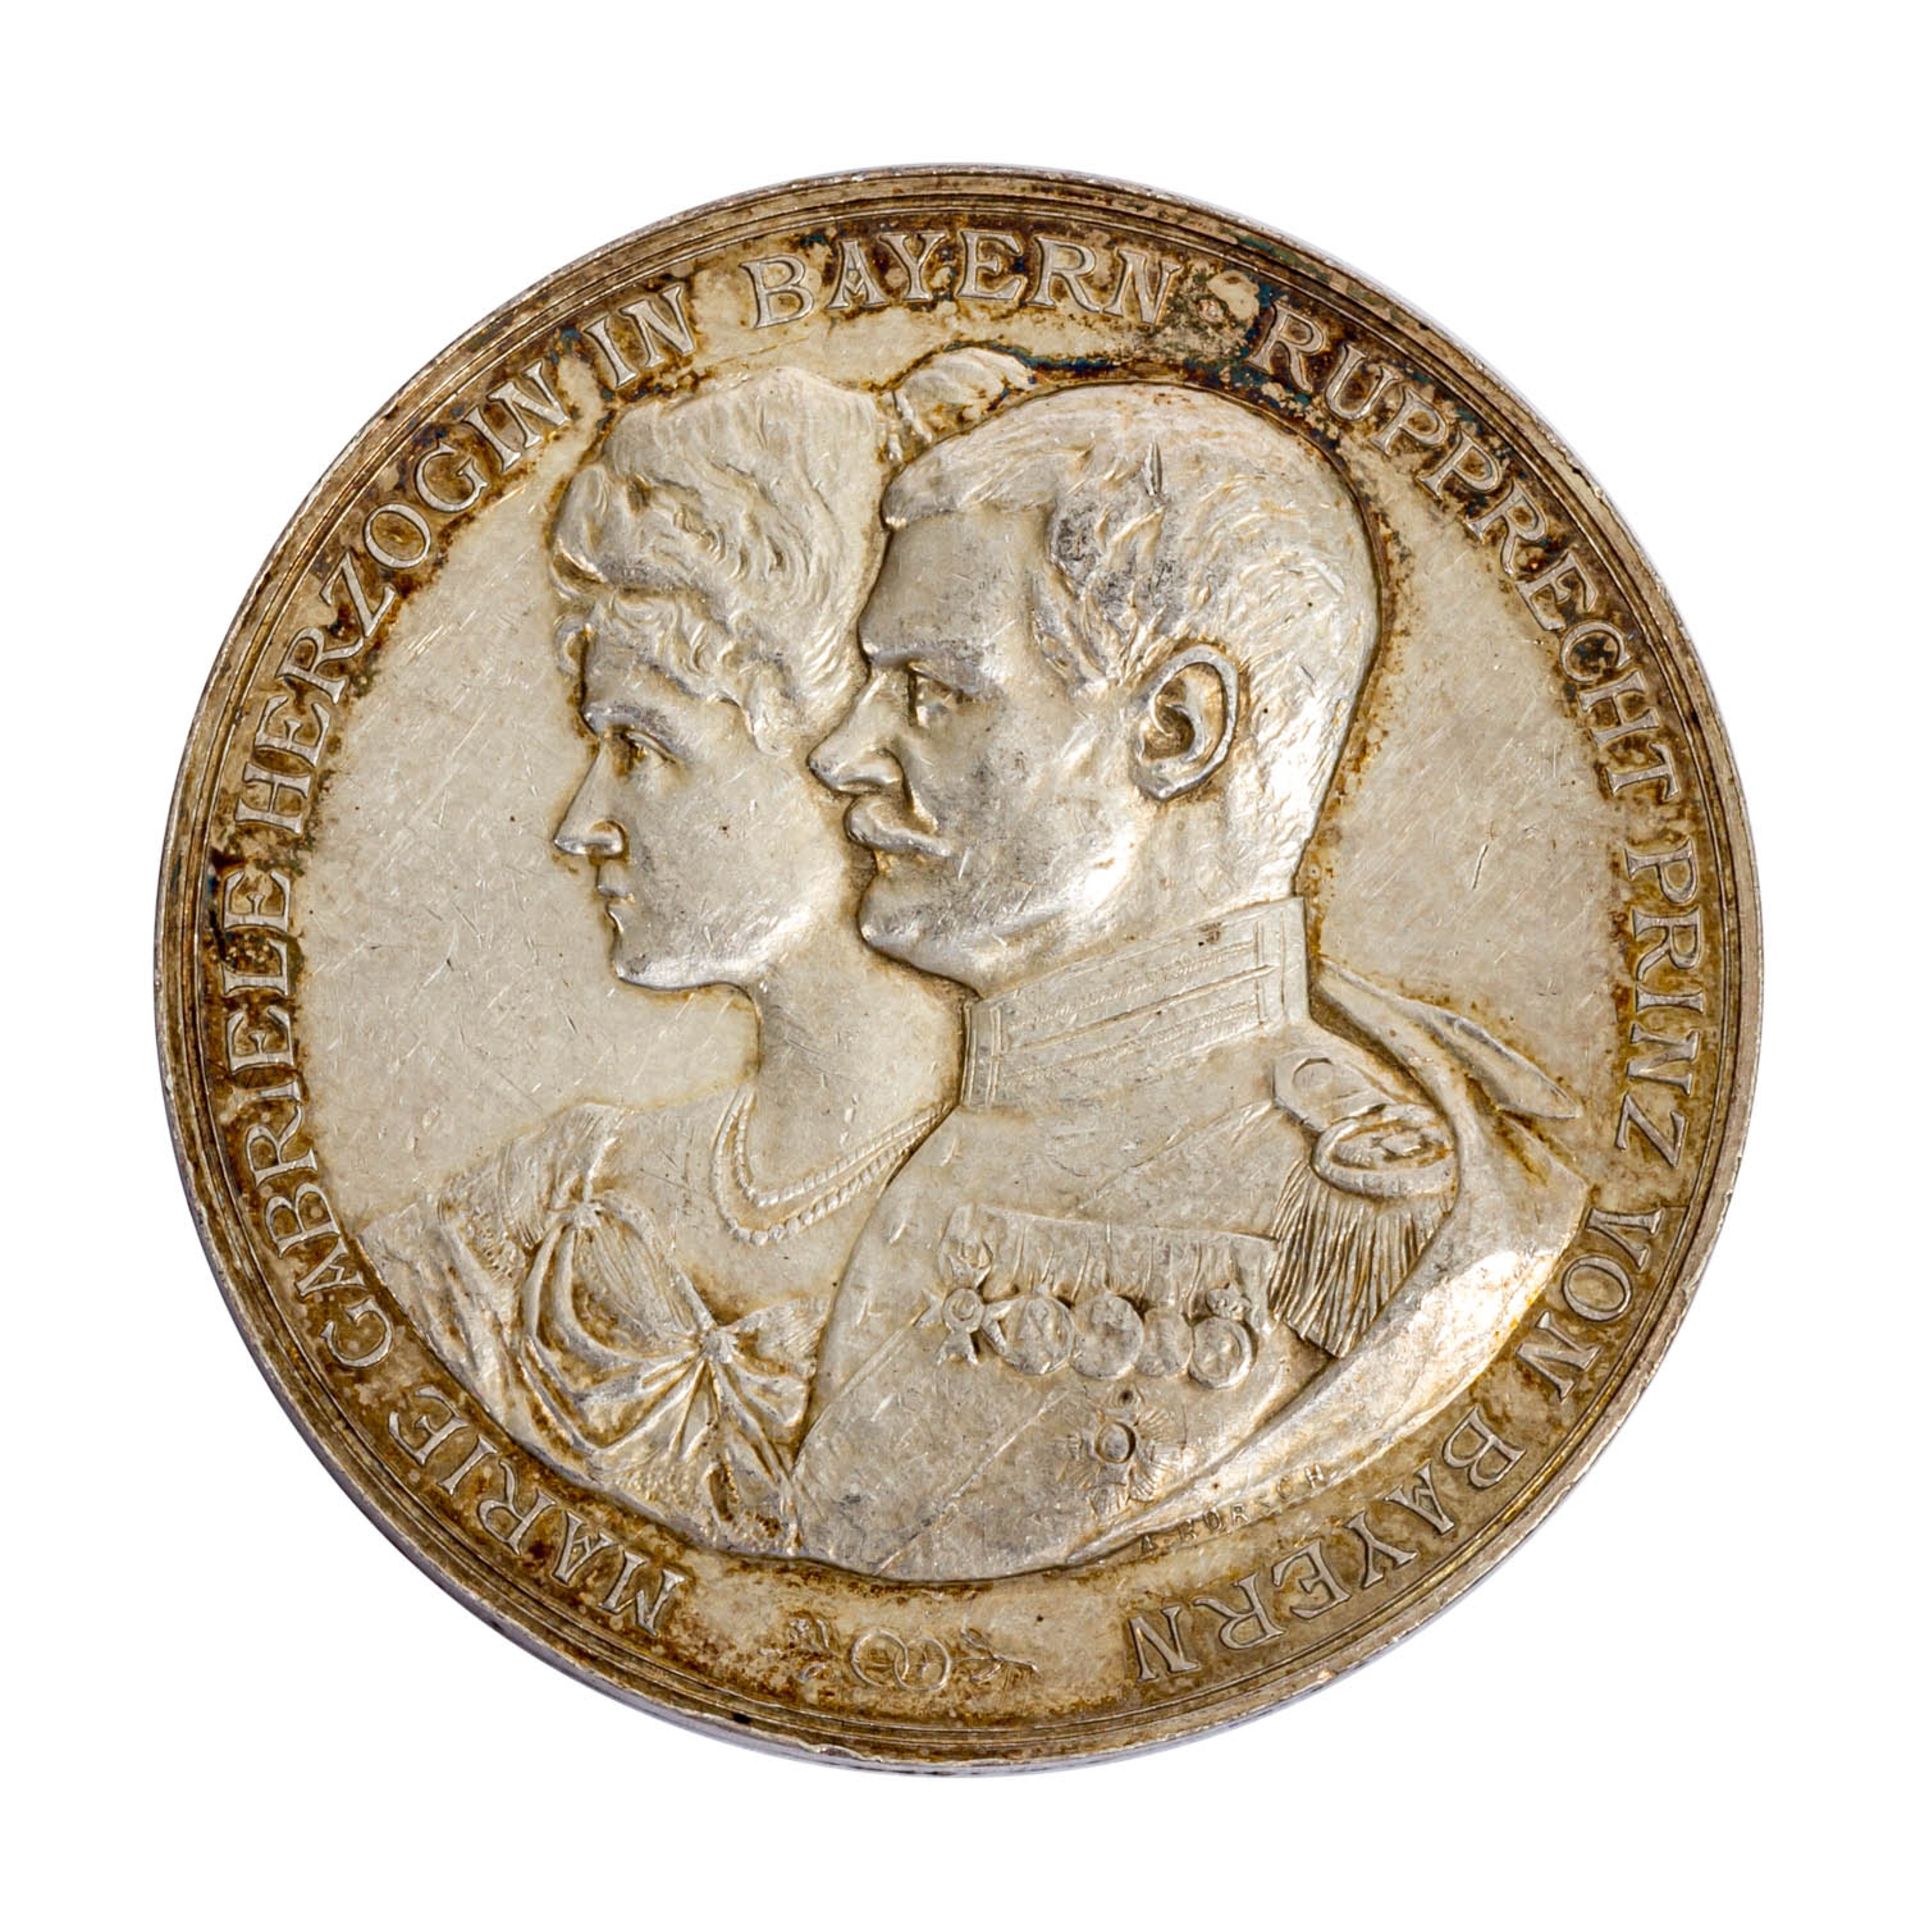 Bayern - Silbergedenkmedaille 1900, Medailleur A. Börsch, Kronprinz Rudolf von Bayern